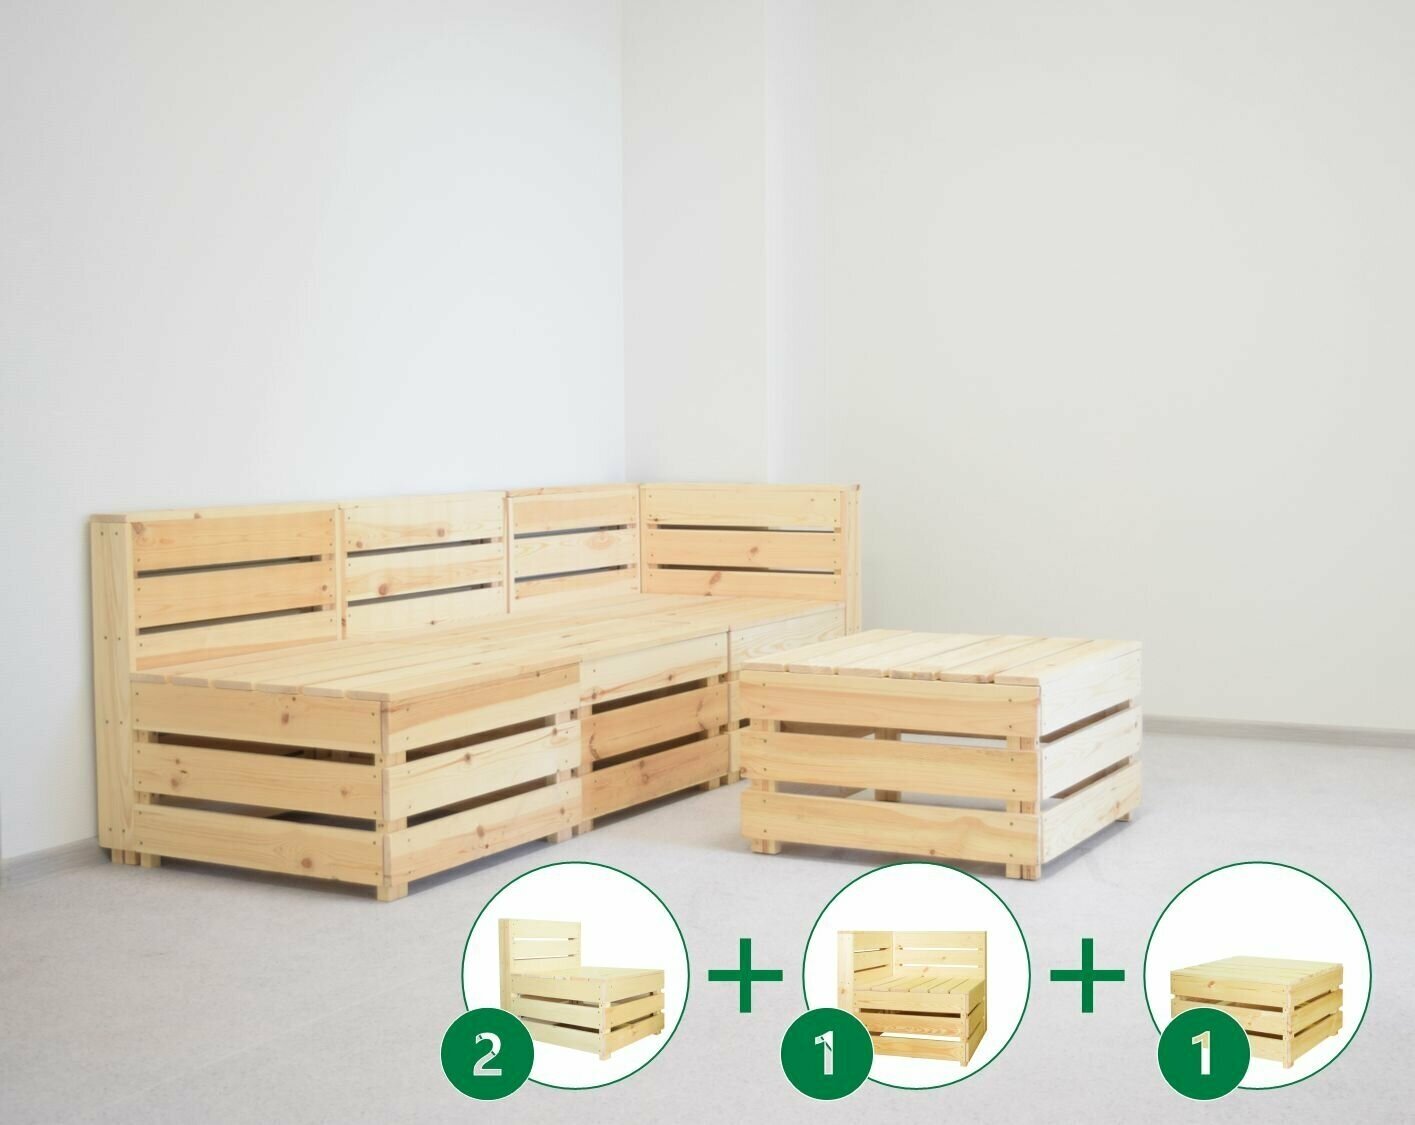 Комплект деревянной мебели №1 из 4х элементов для сада RUSTIC HOME / Диван со столом для 3х человек 190х70 см